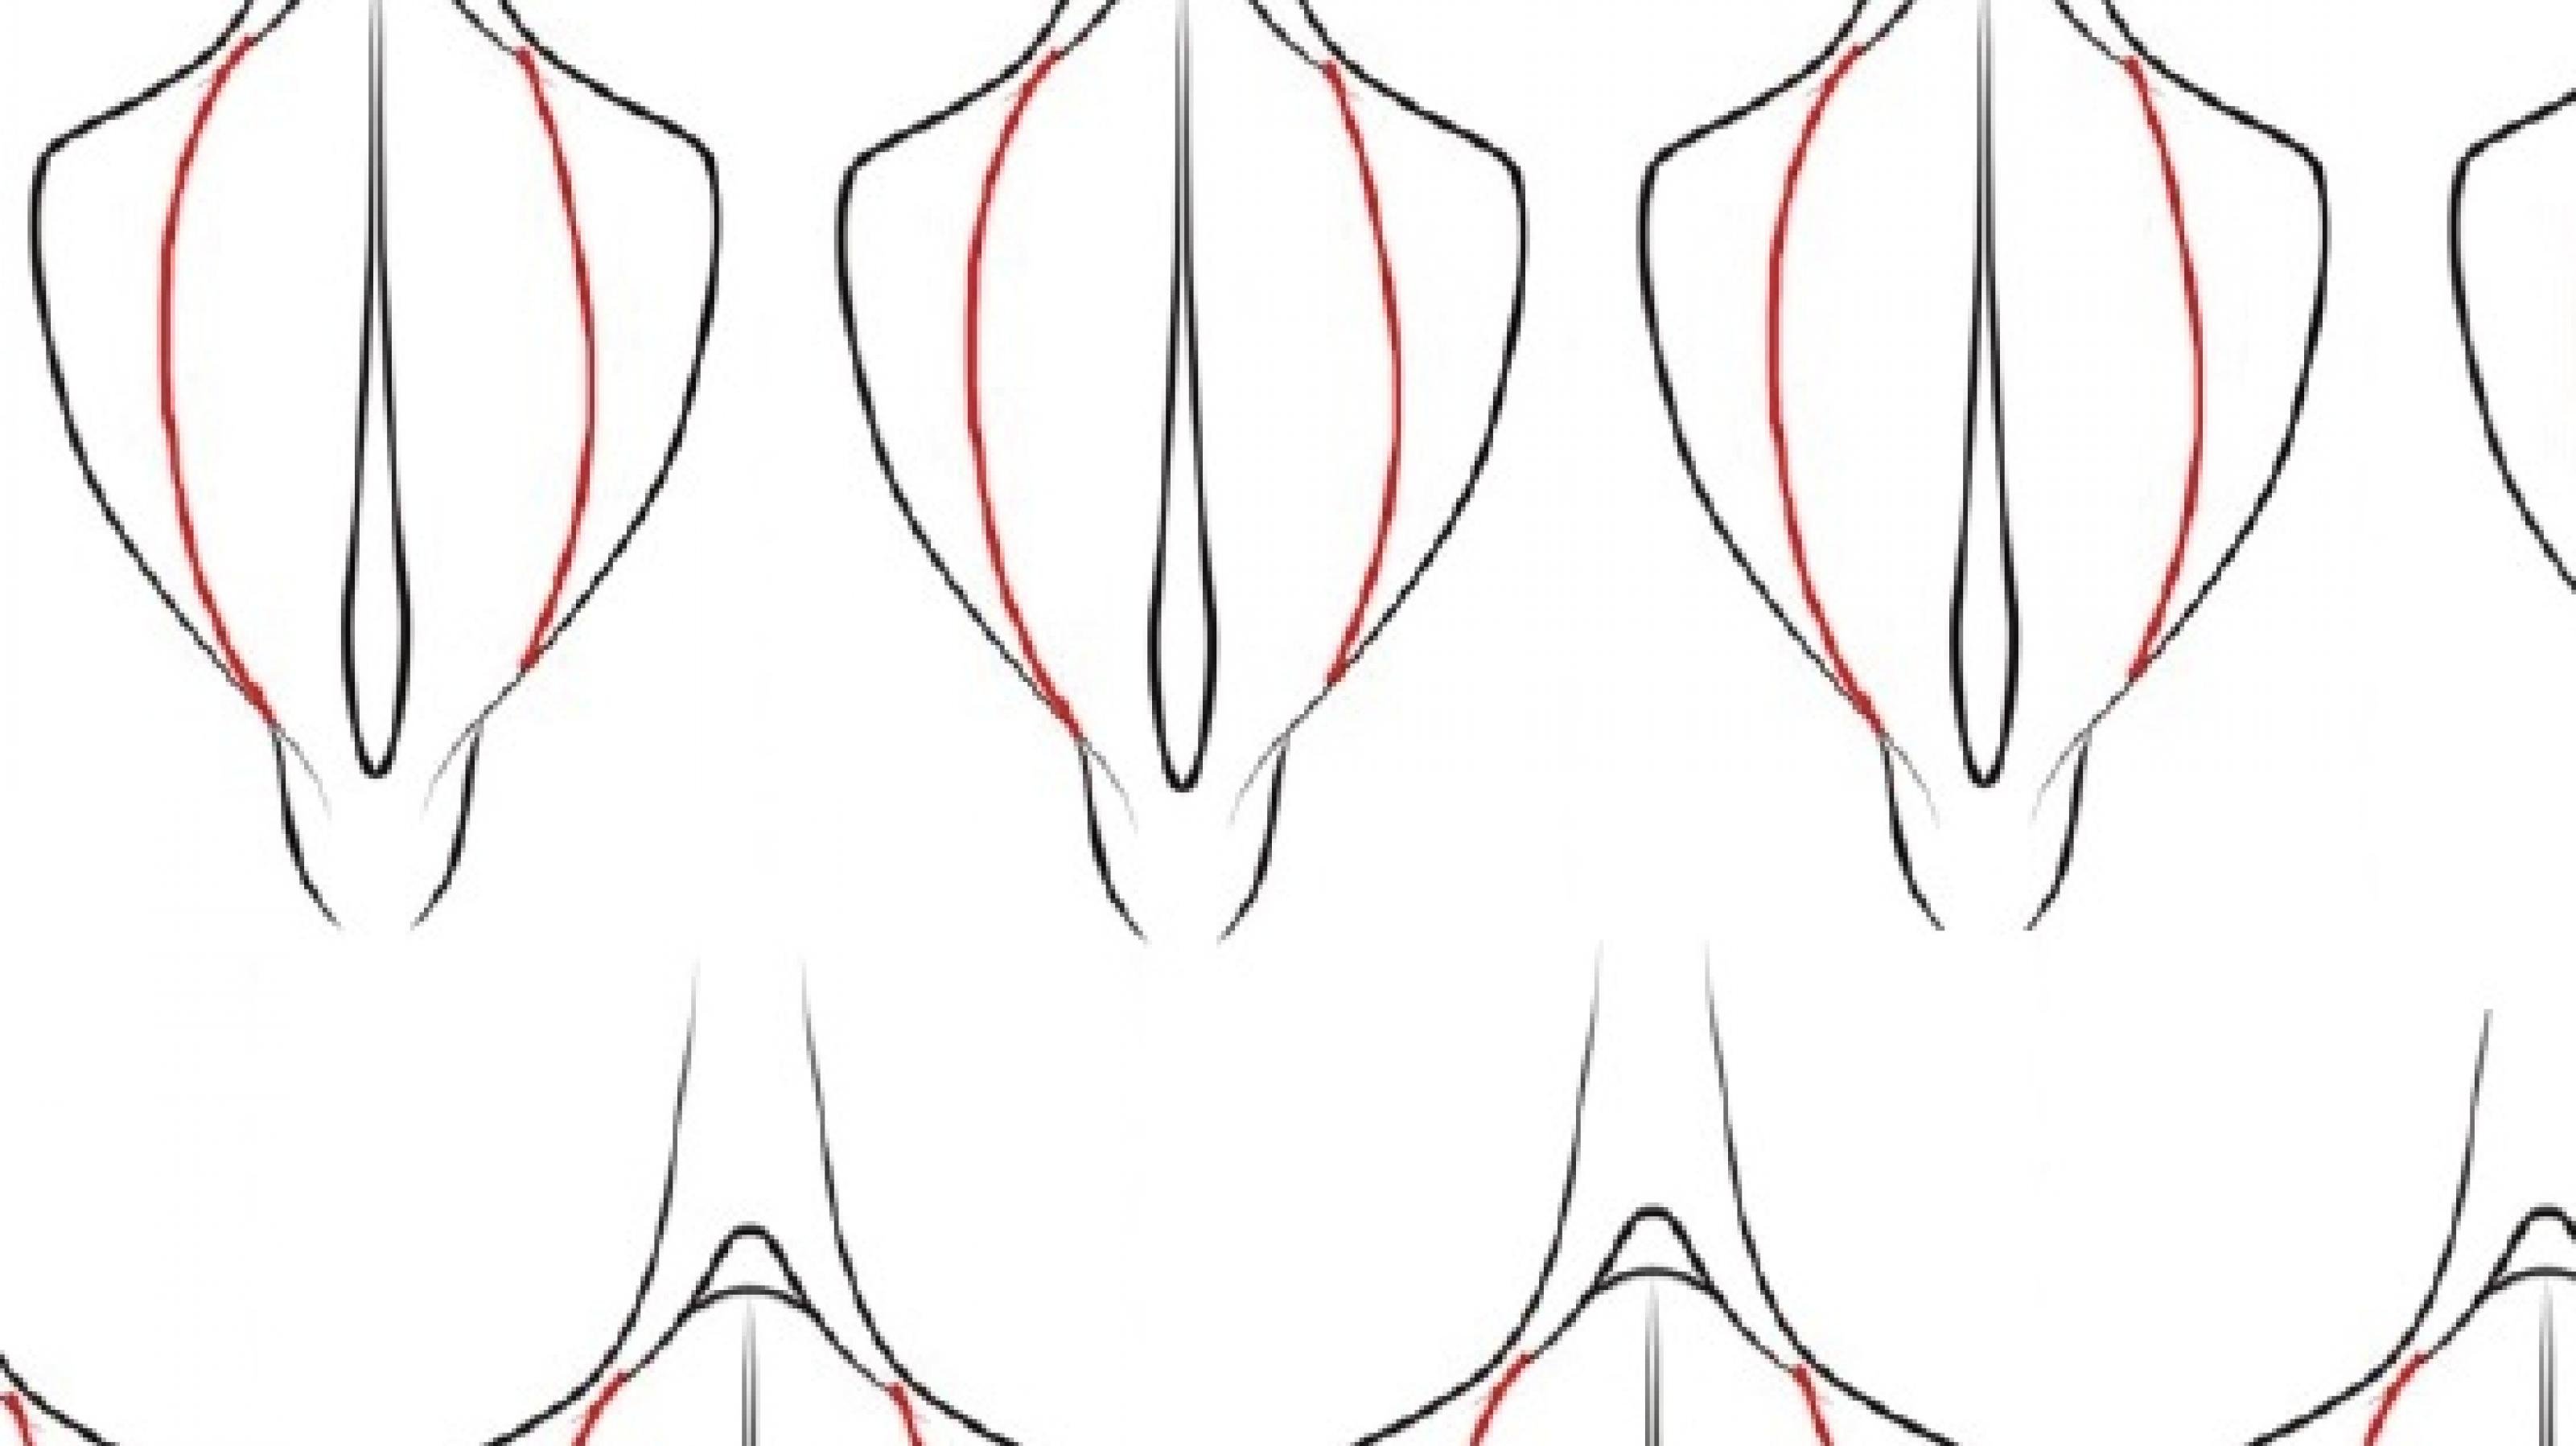 Zu sehen ist die ideale Anatomie der Vulva als intimchirurgische Zeichnung. Diese Zeichnung ist zu einer Collage arrangiert und wiederholt sich ständig ähnlich wie beim Blockdruck.